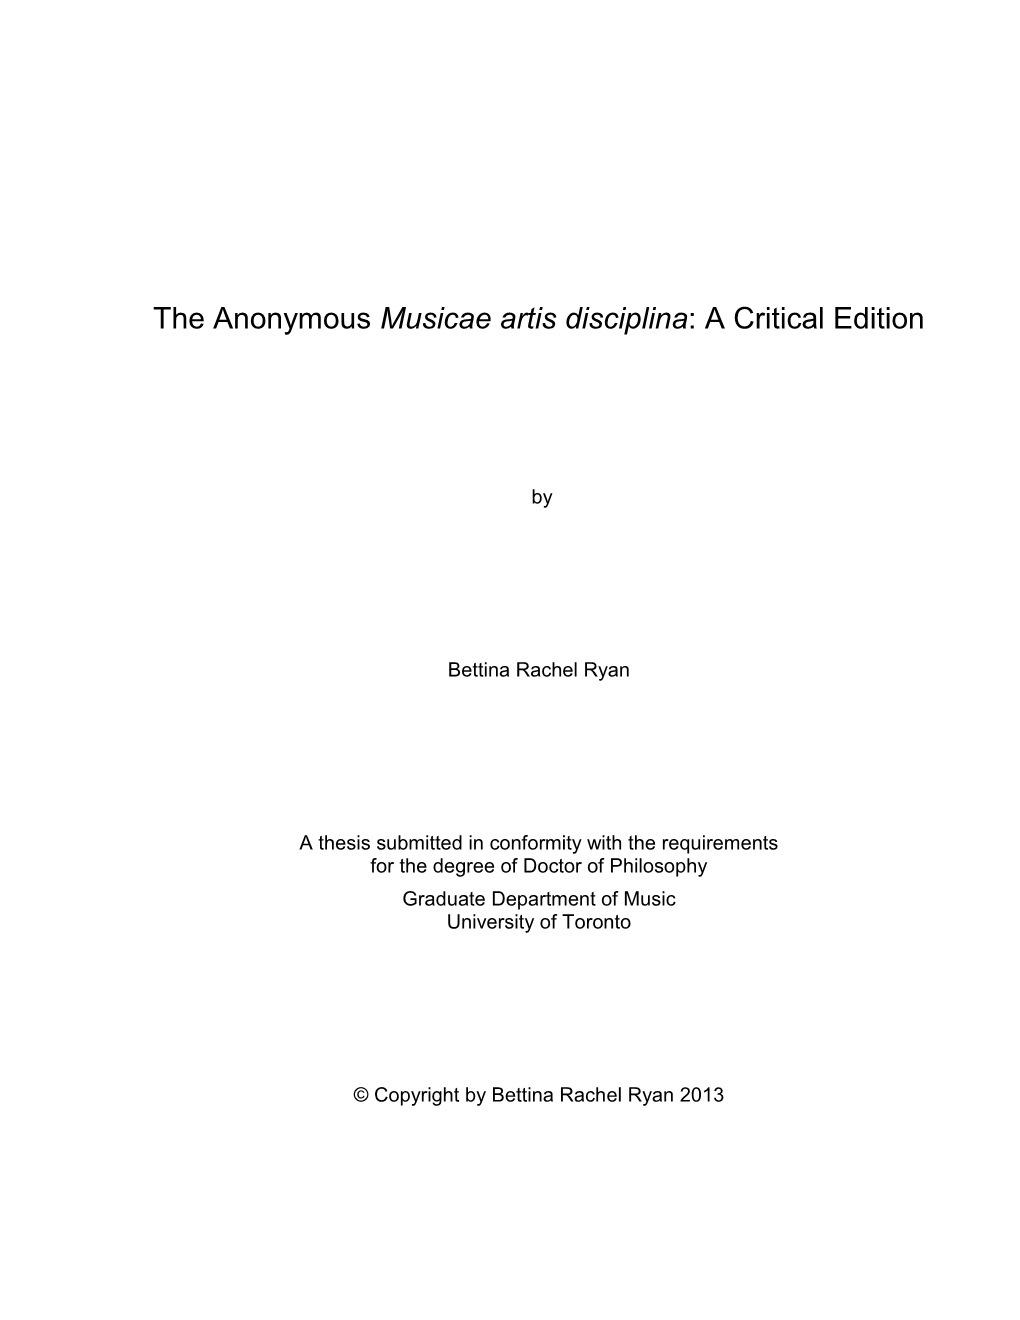 The Anonymous Musicae Artis Disciplina: a Critical Edition